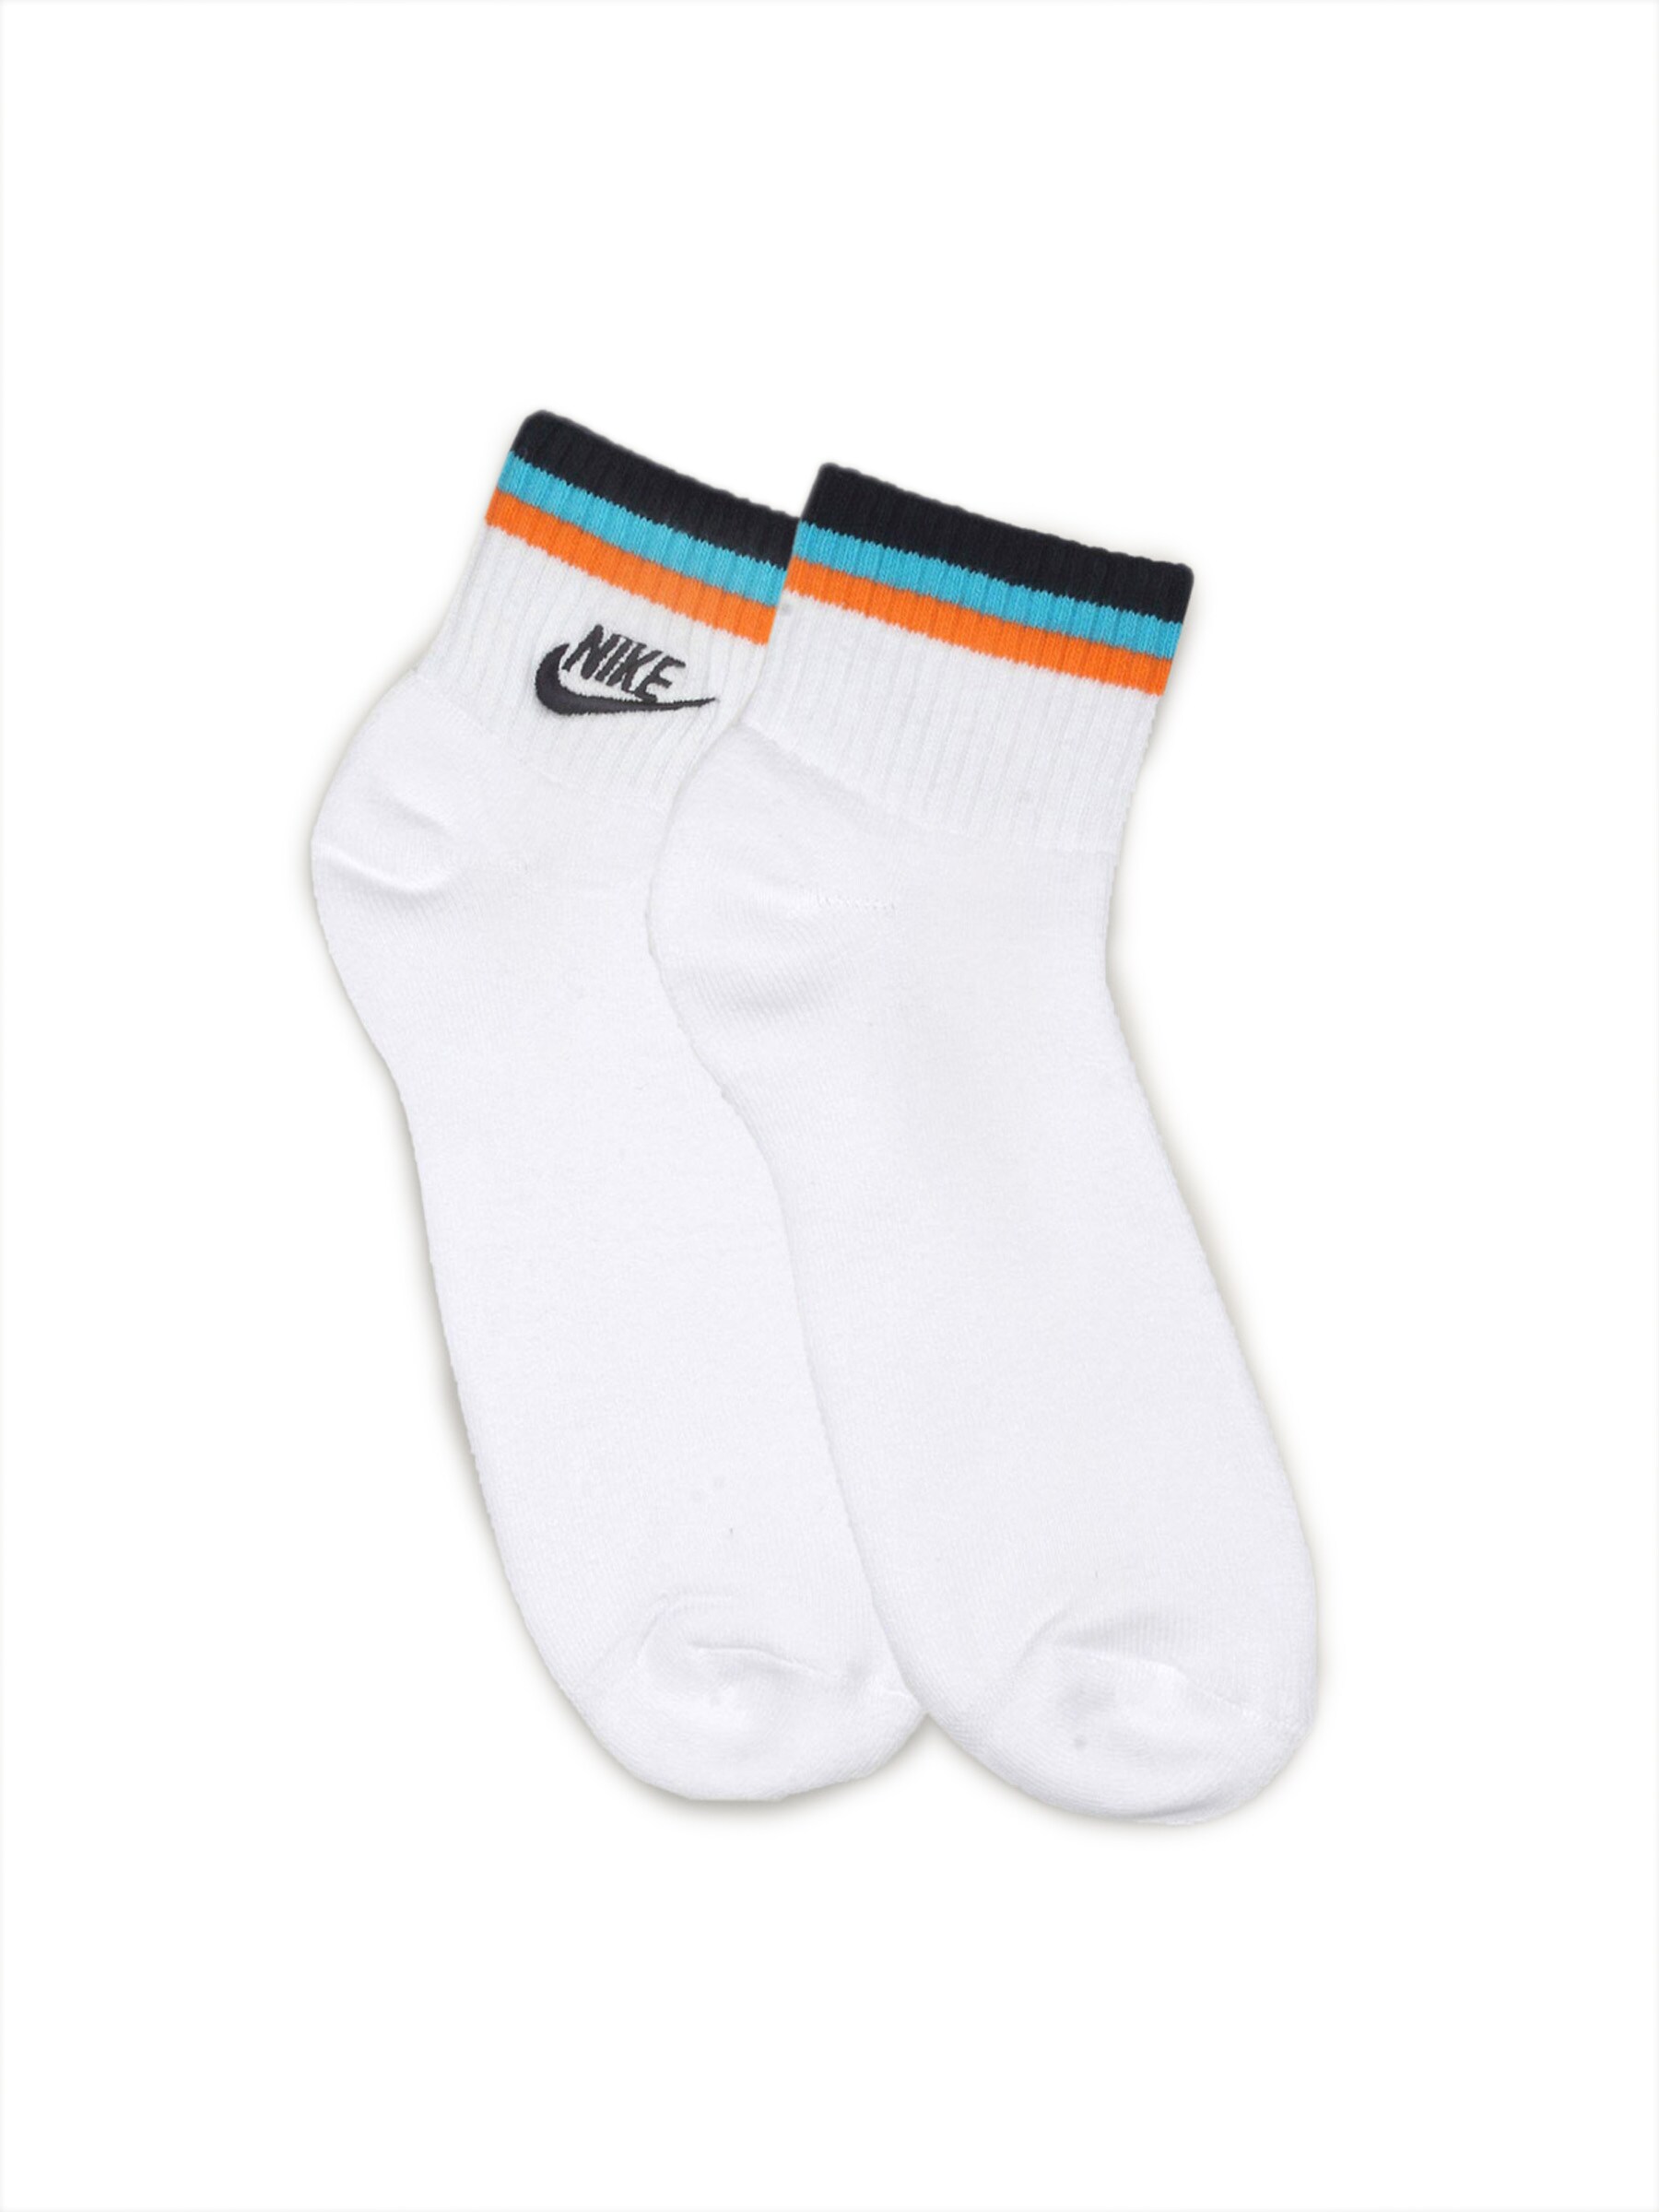 Nike Men's Nsw Clsc White Socks